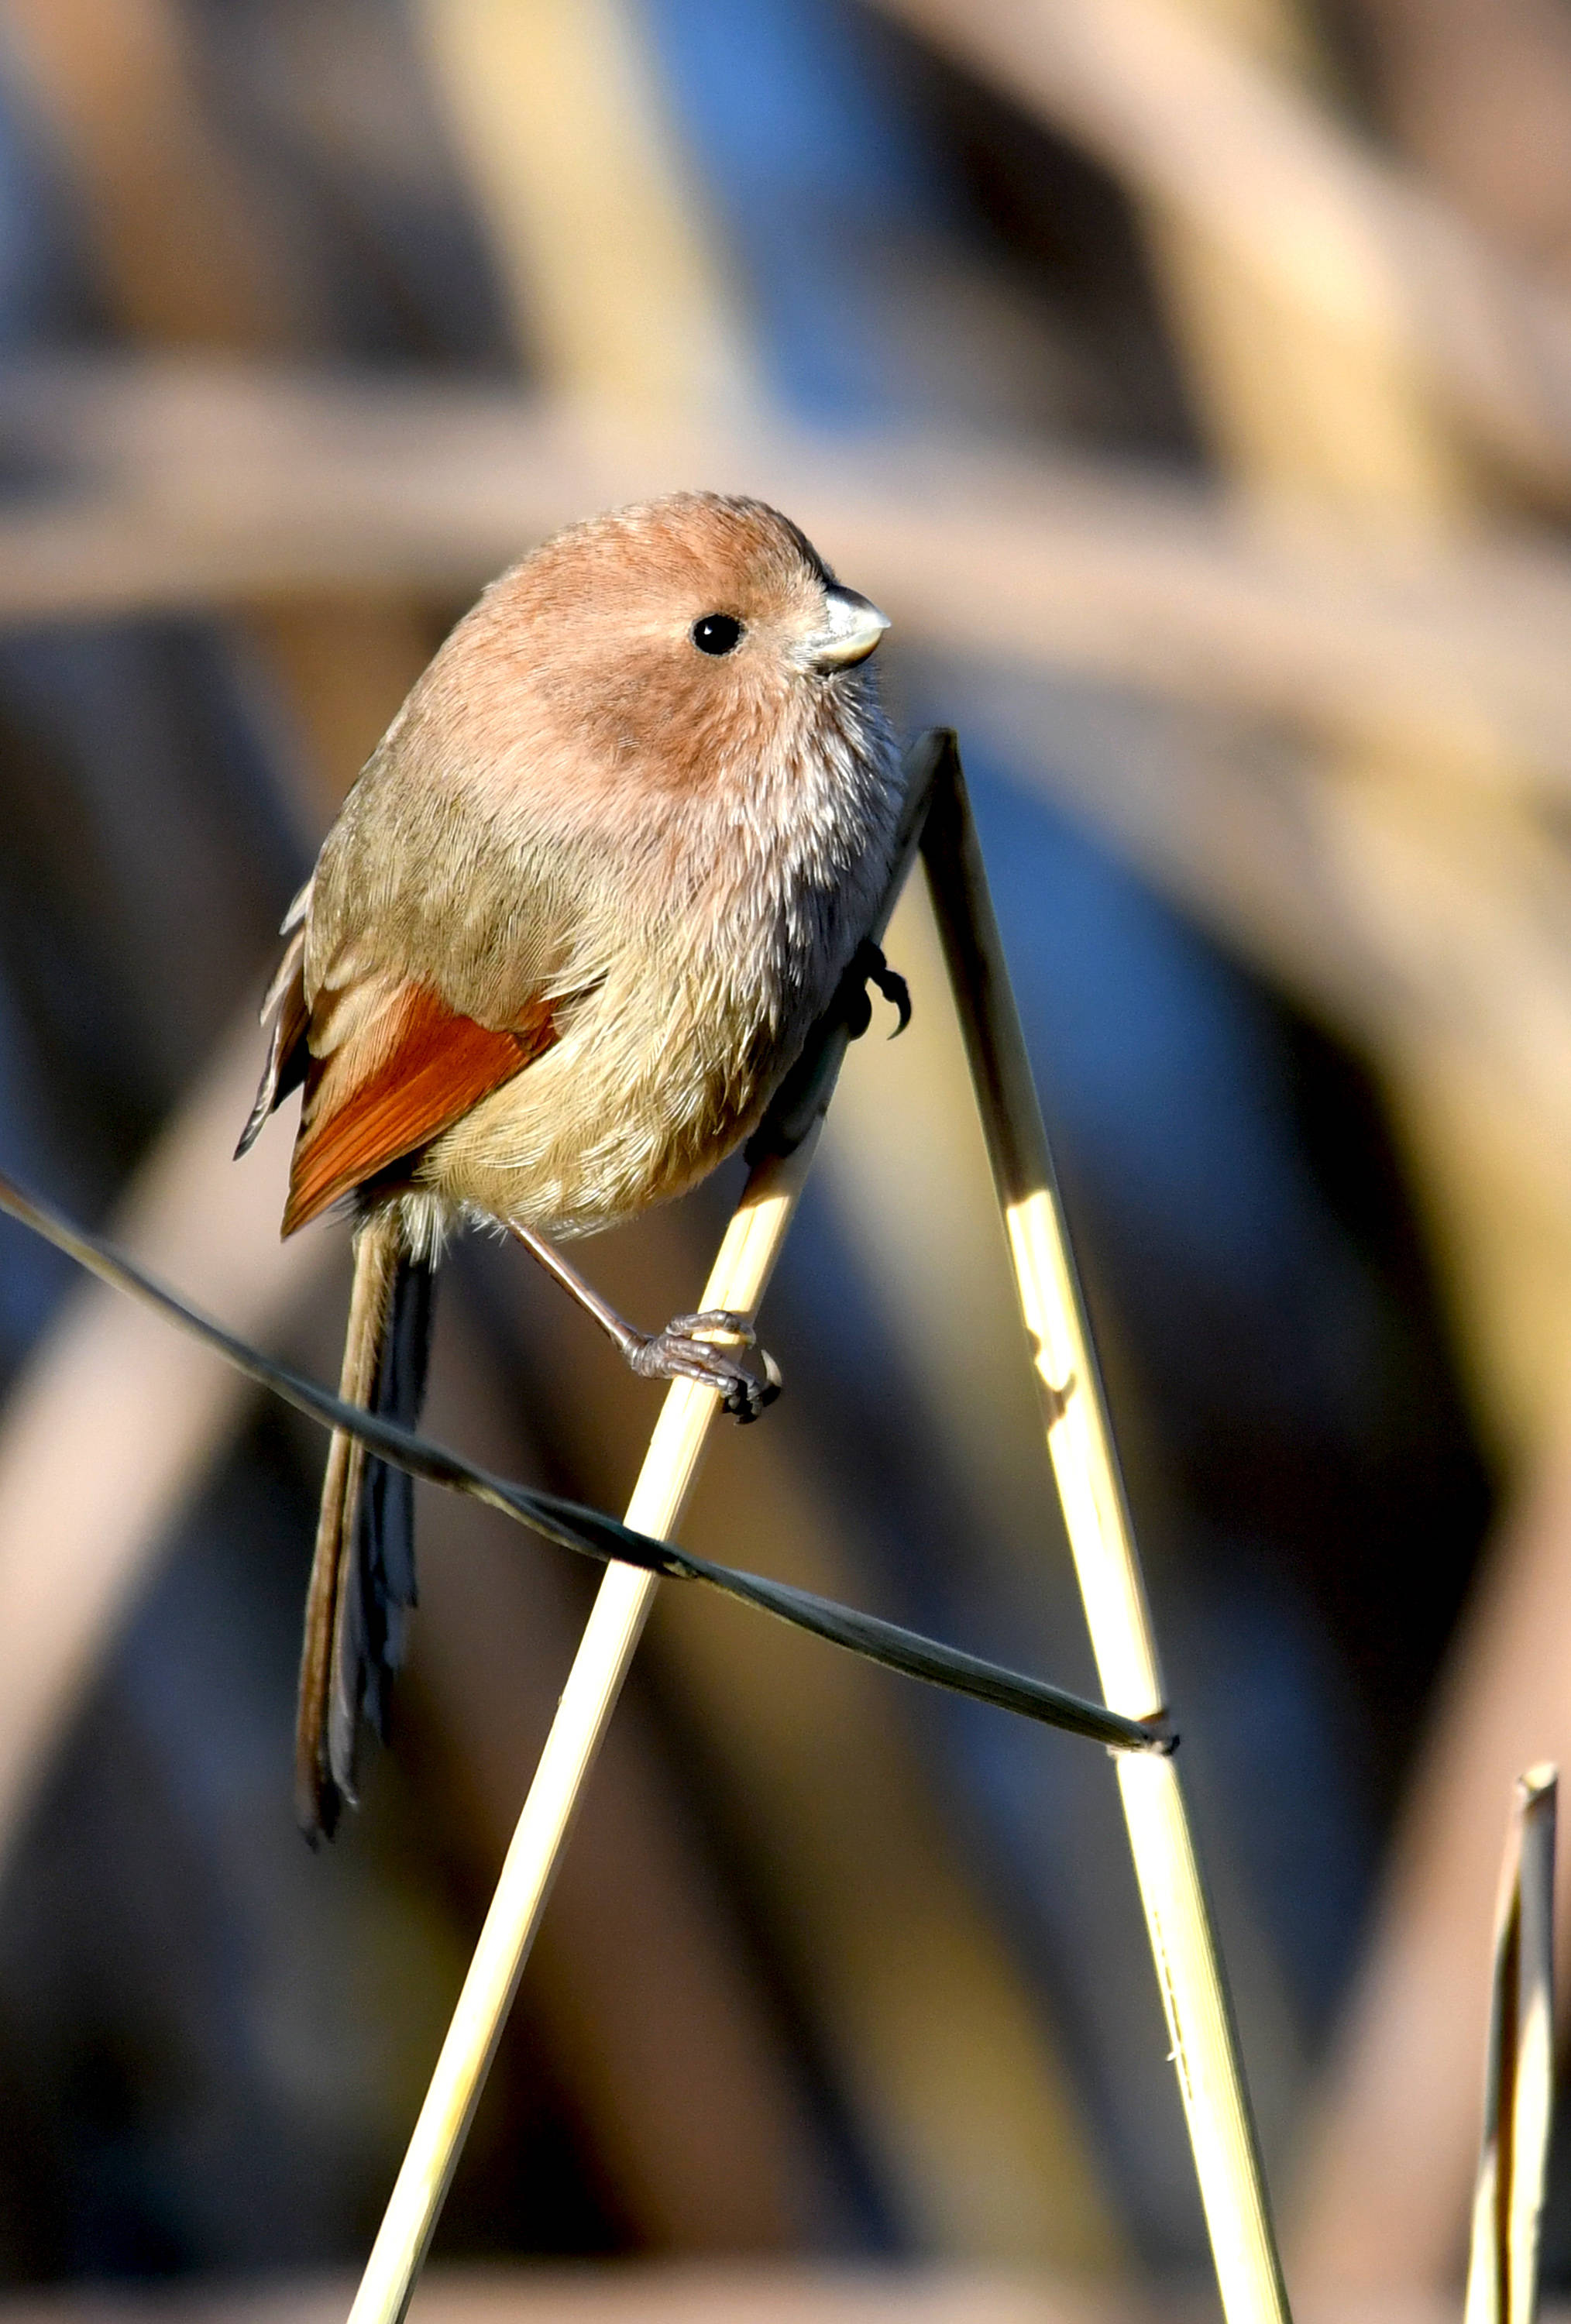 棕头鸦雀人工繁殖图片